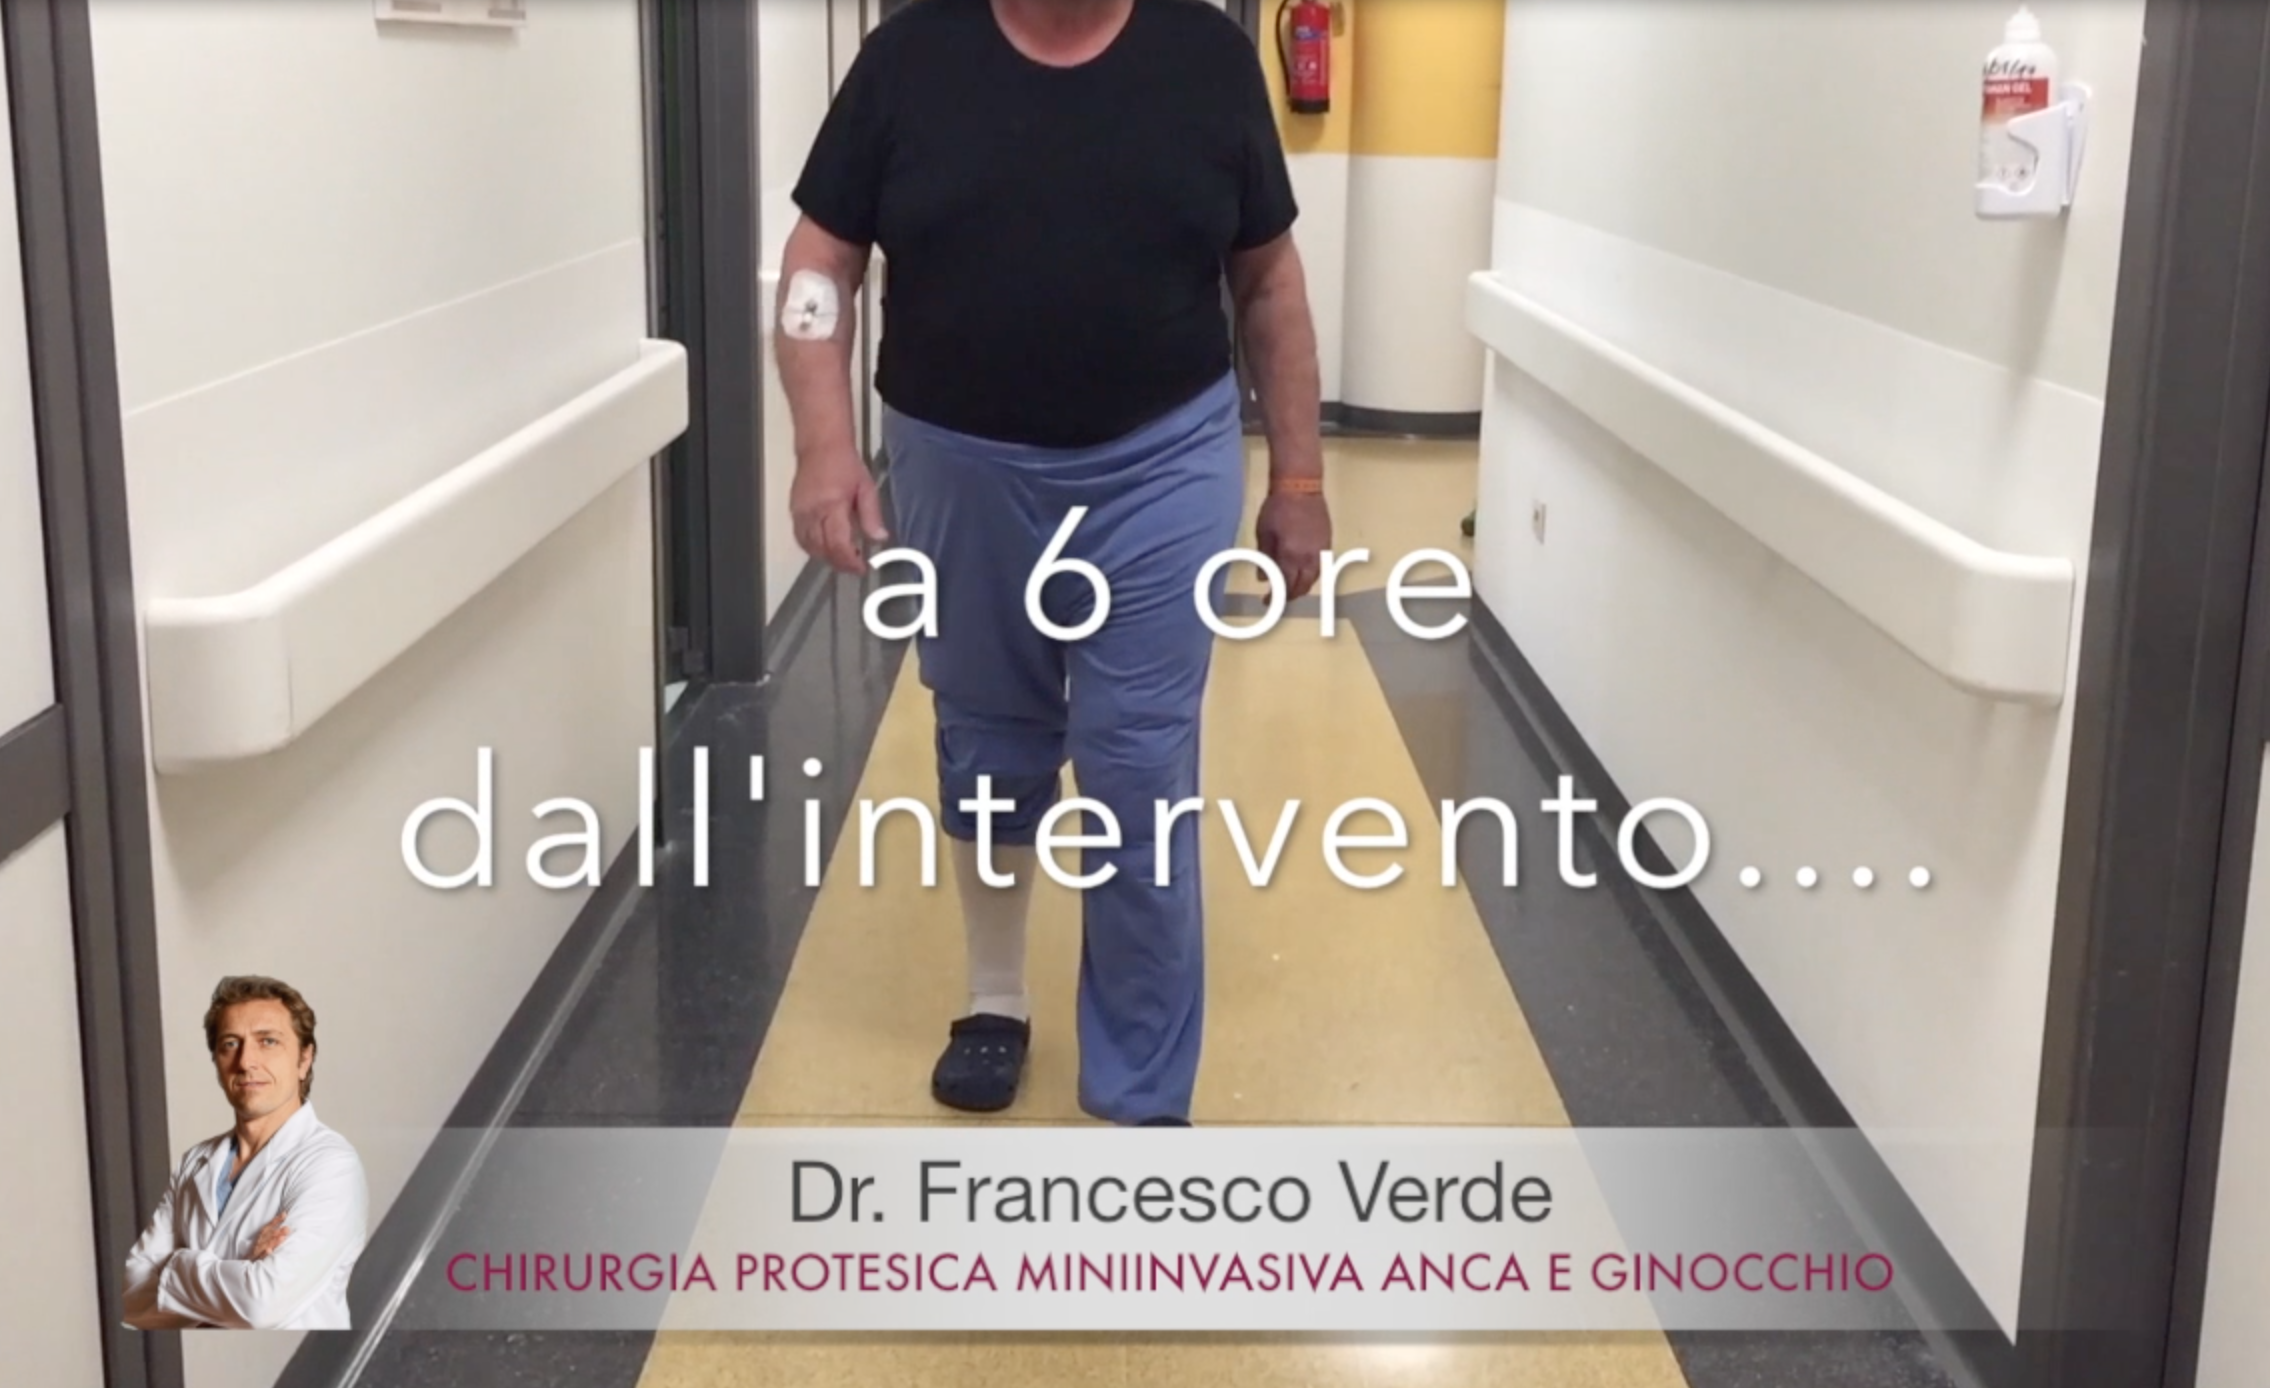 Francesco-verde-protesi-monocompartimentale-ginocchio-revisione-protesi-anca-post-operatorio